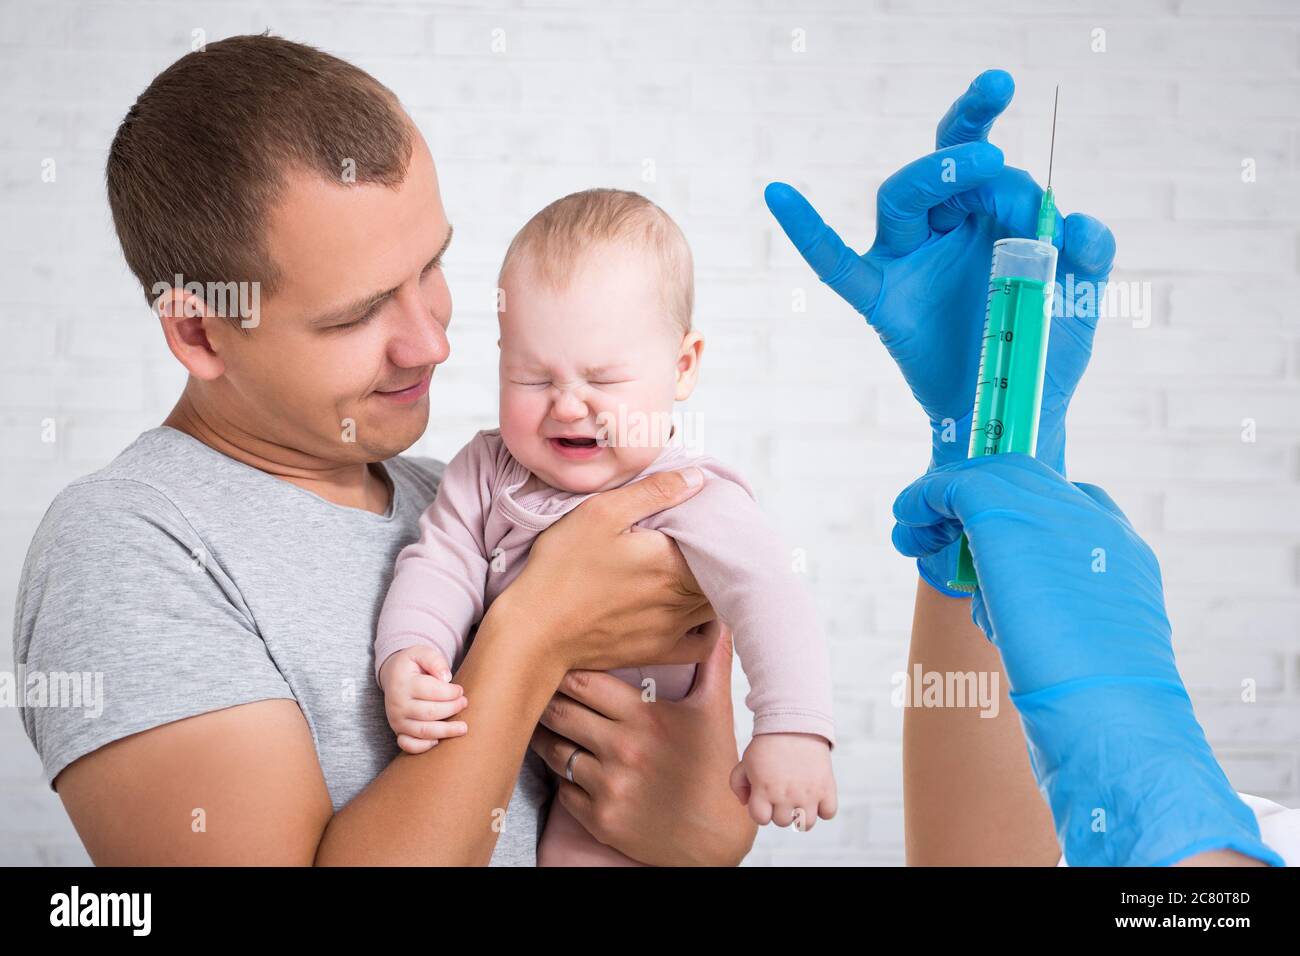 concetto di assistenza sanitaria e vaccinazione - giovane padre che tiene piangendo la bambina e le mani del medico con siringa Foto Stock